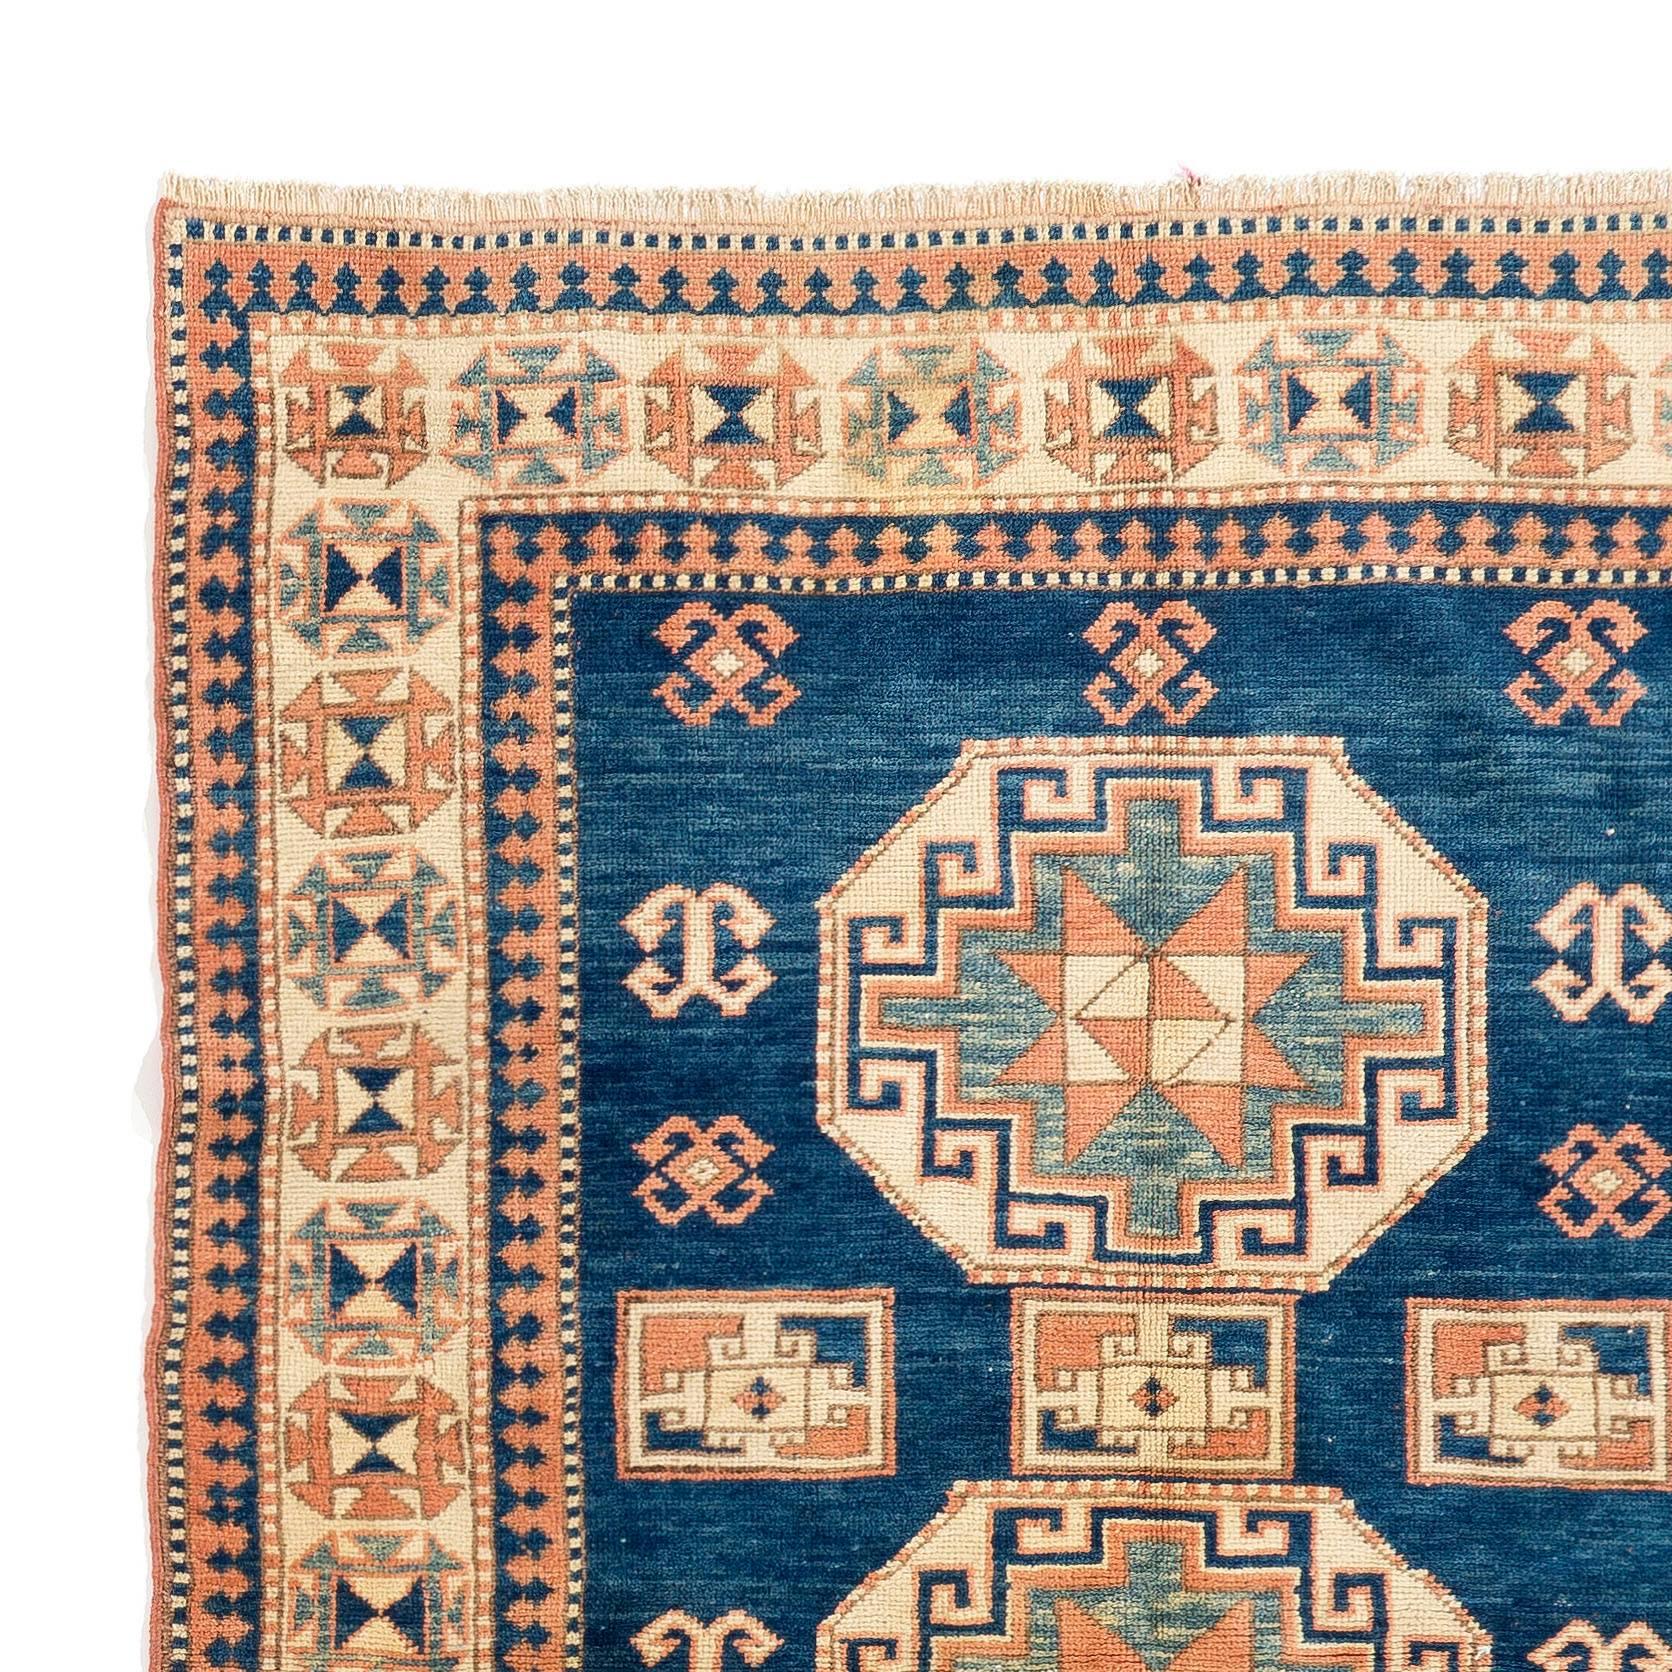 Vintage Caucasian Kazak rug
100% wool. Natural dyes.